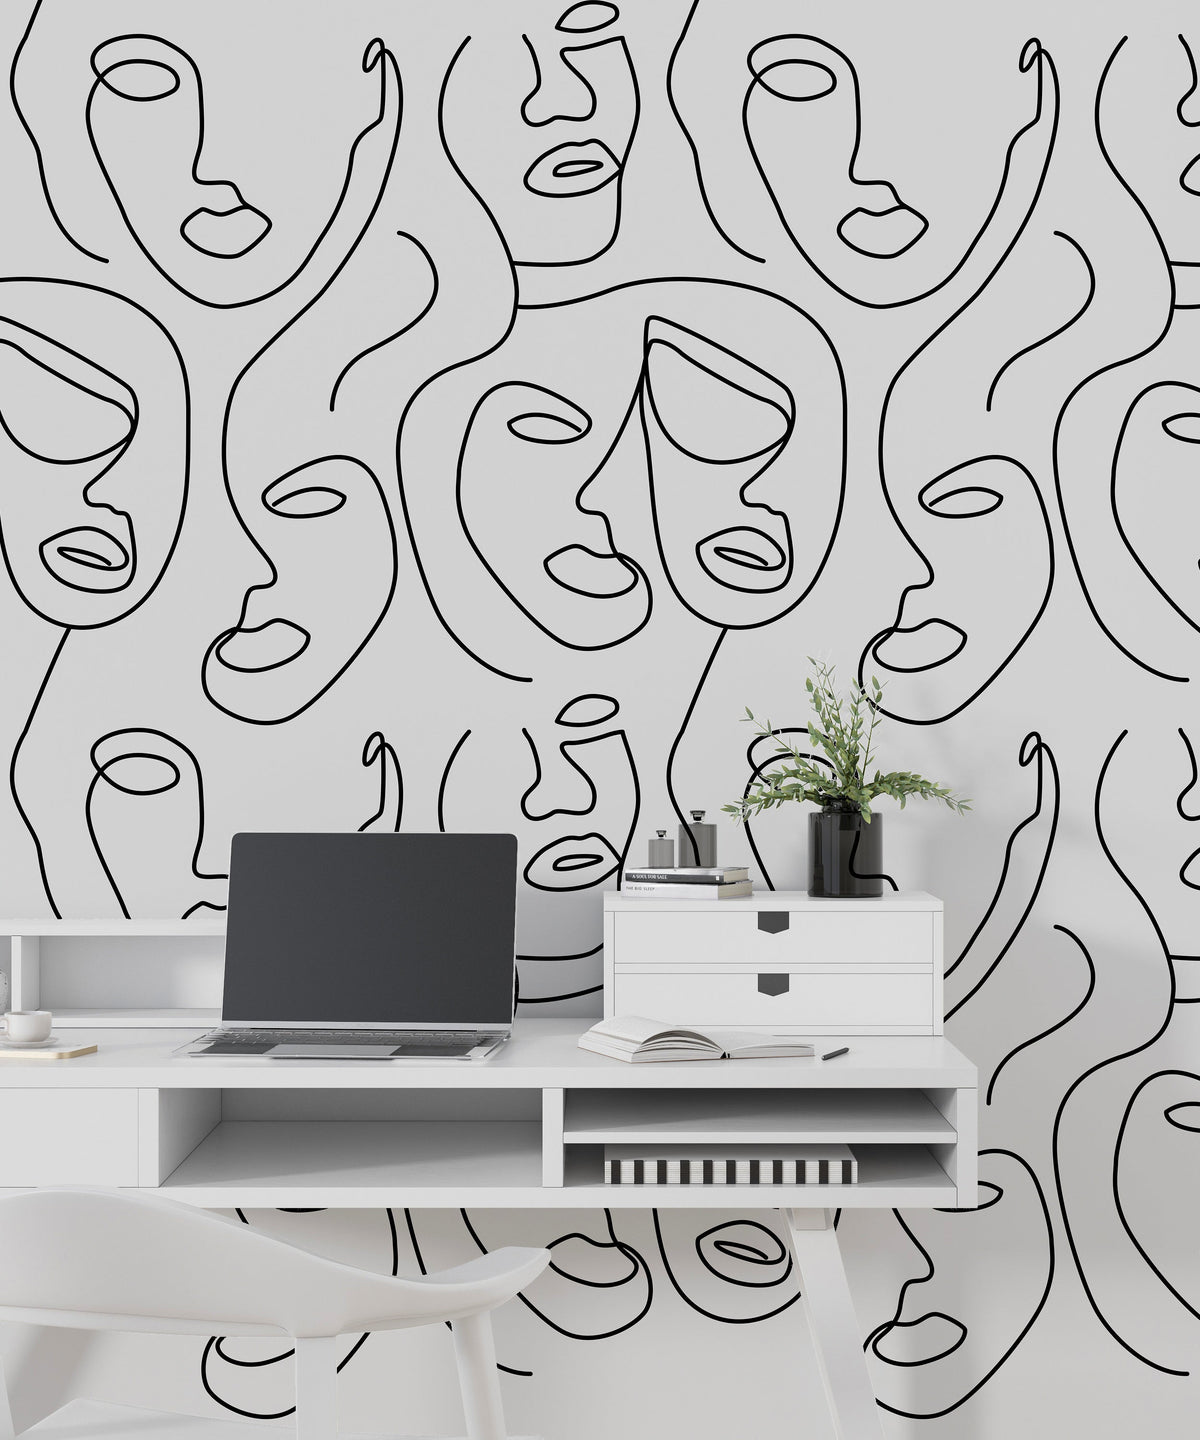 Matisse Line Art Wallpaper Mural - Exquisite Designs-ChandeliersDecor